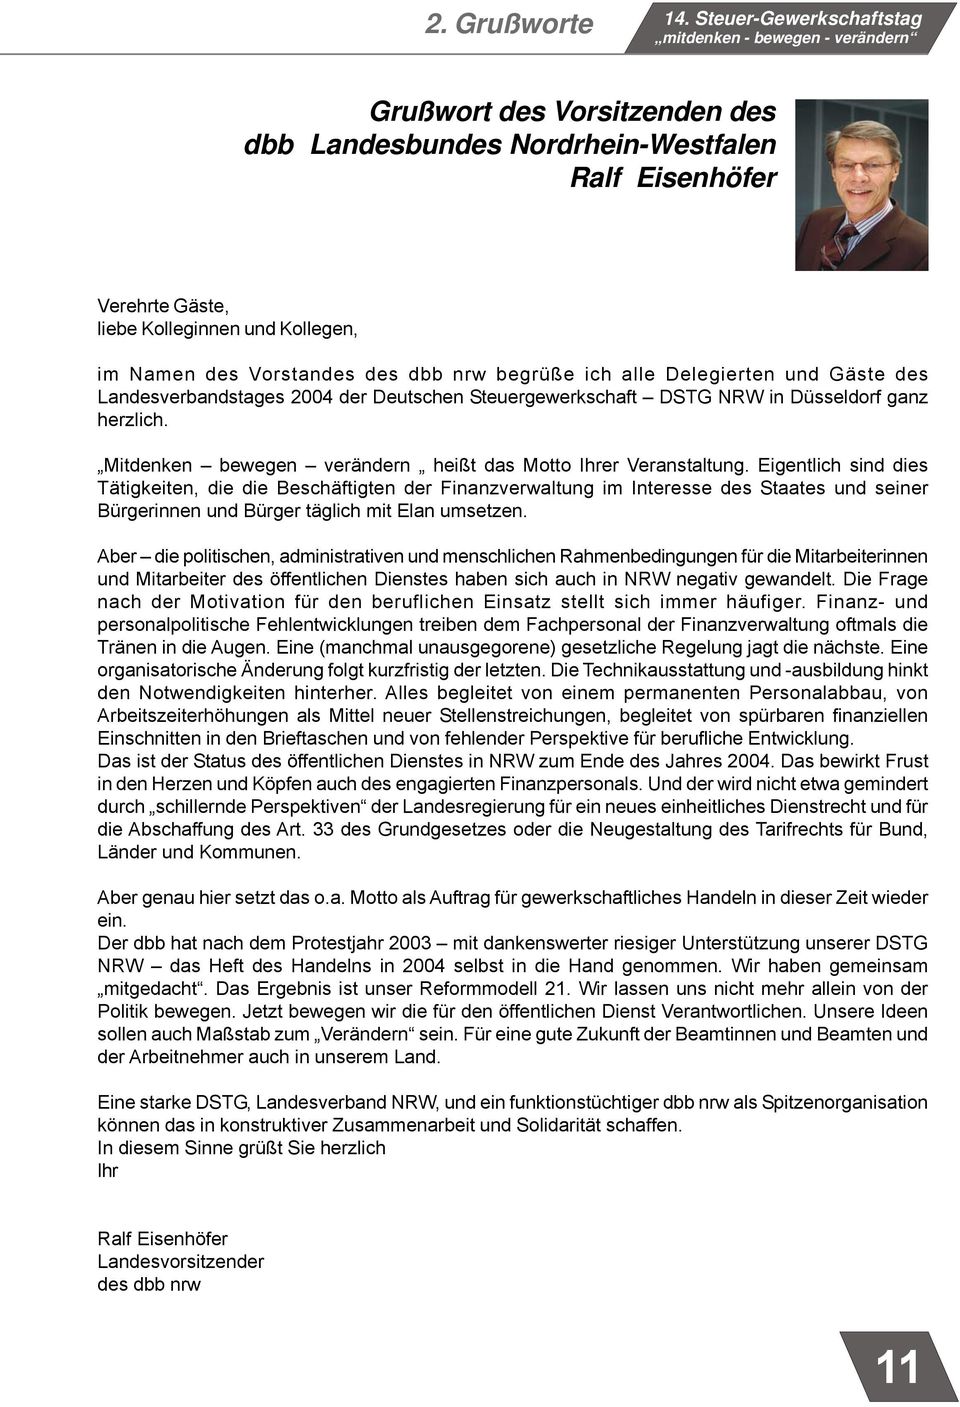 Vorstandes des dbb nrw begrüße ich alle Delegierten und Gäste des Landesverbandstages 2004 der Deutschen Steuergewerkschaft DSTG NRW in Düsseldorf ganz herzlich.